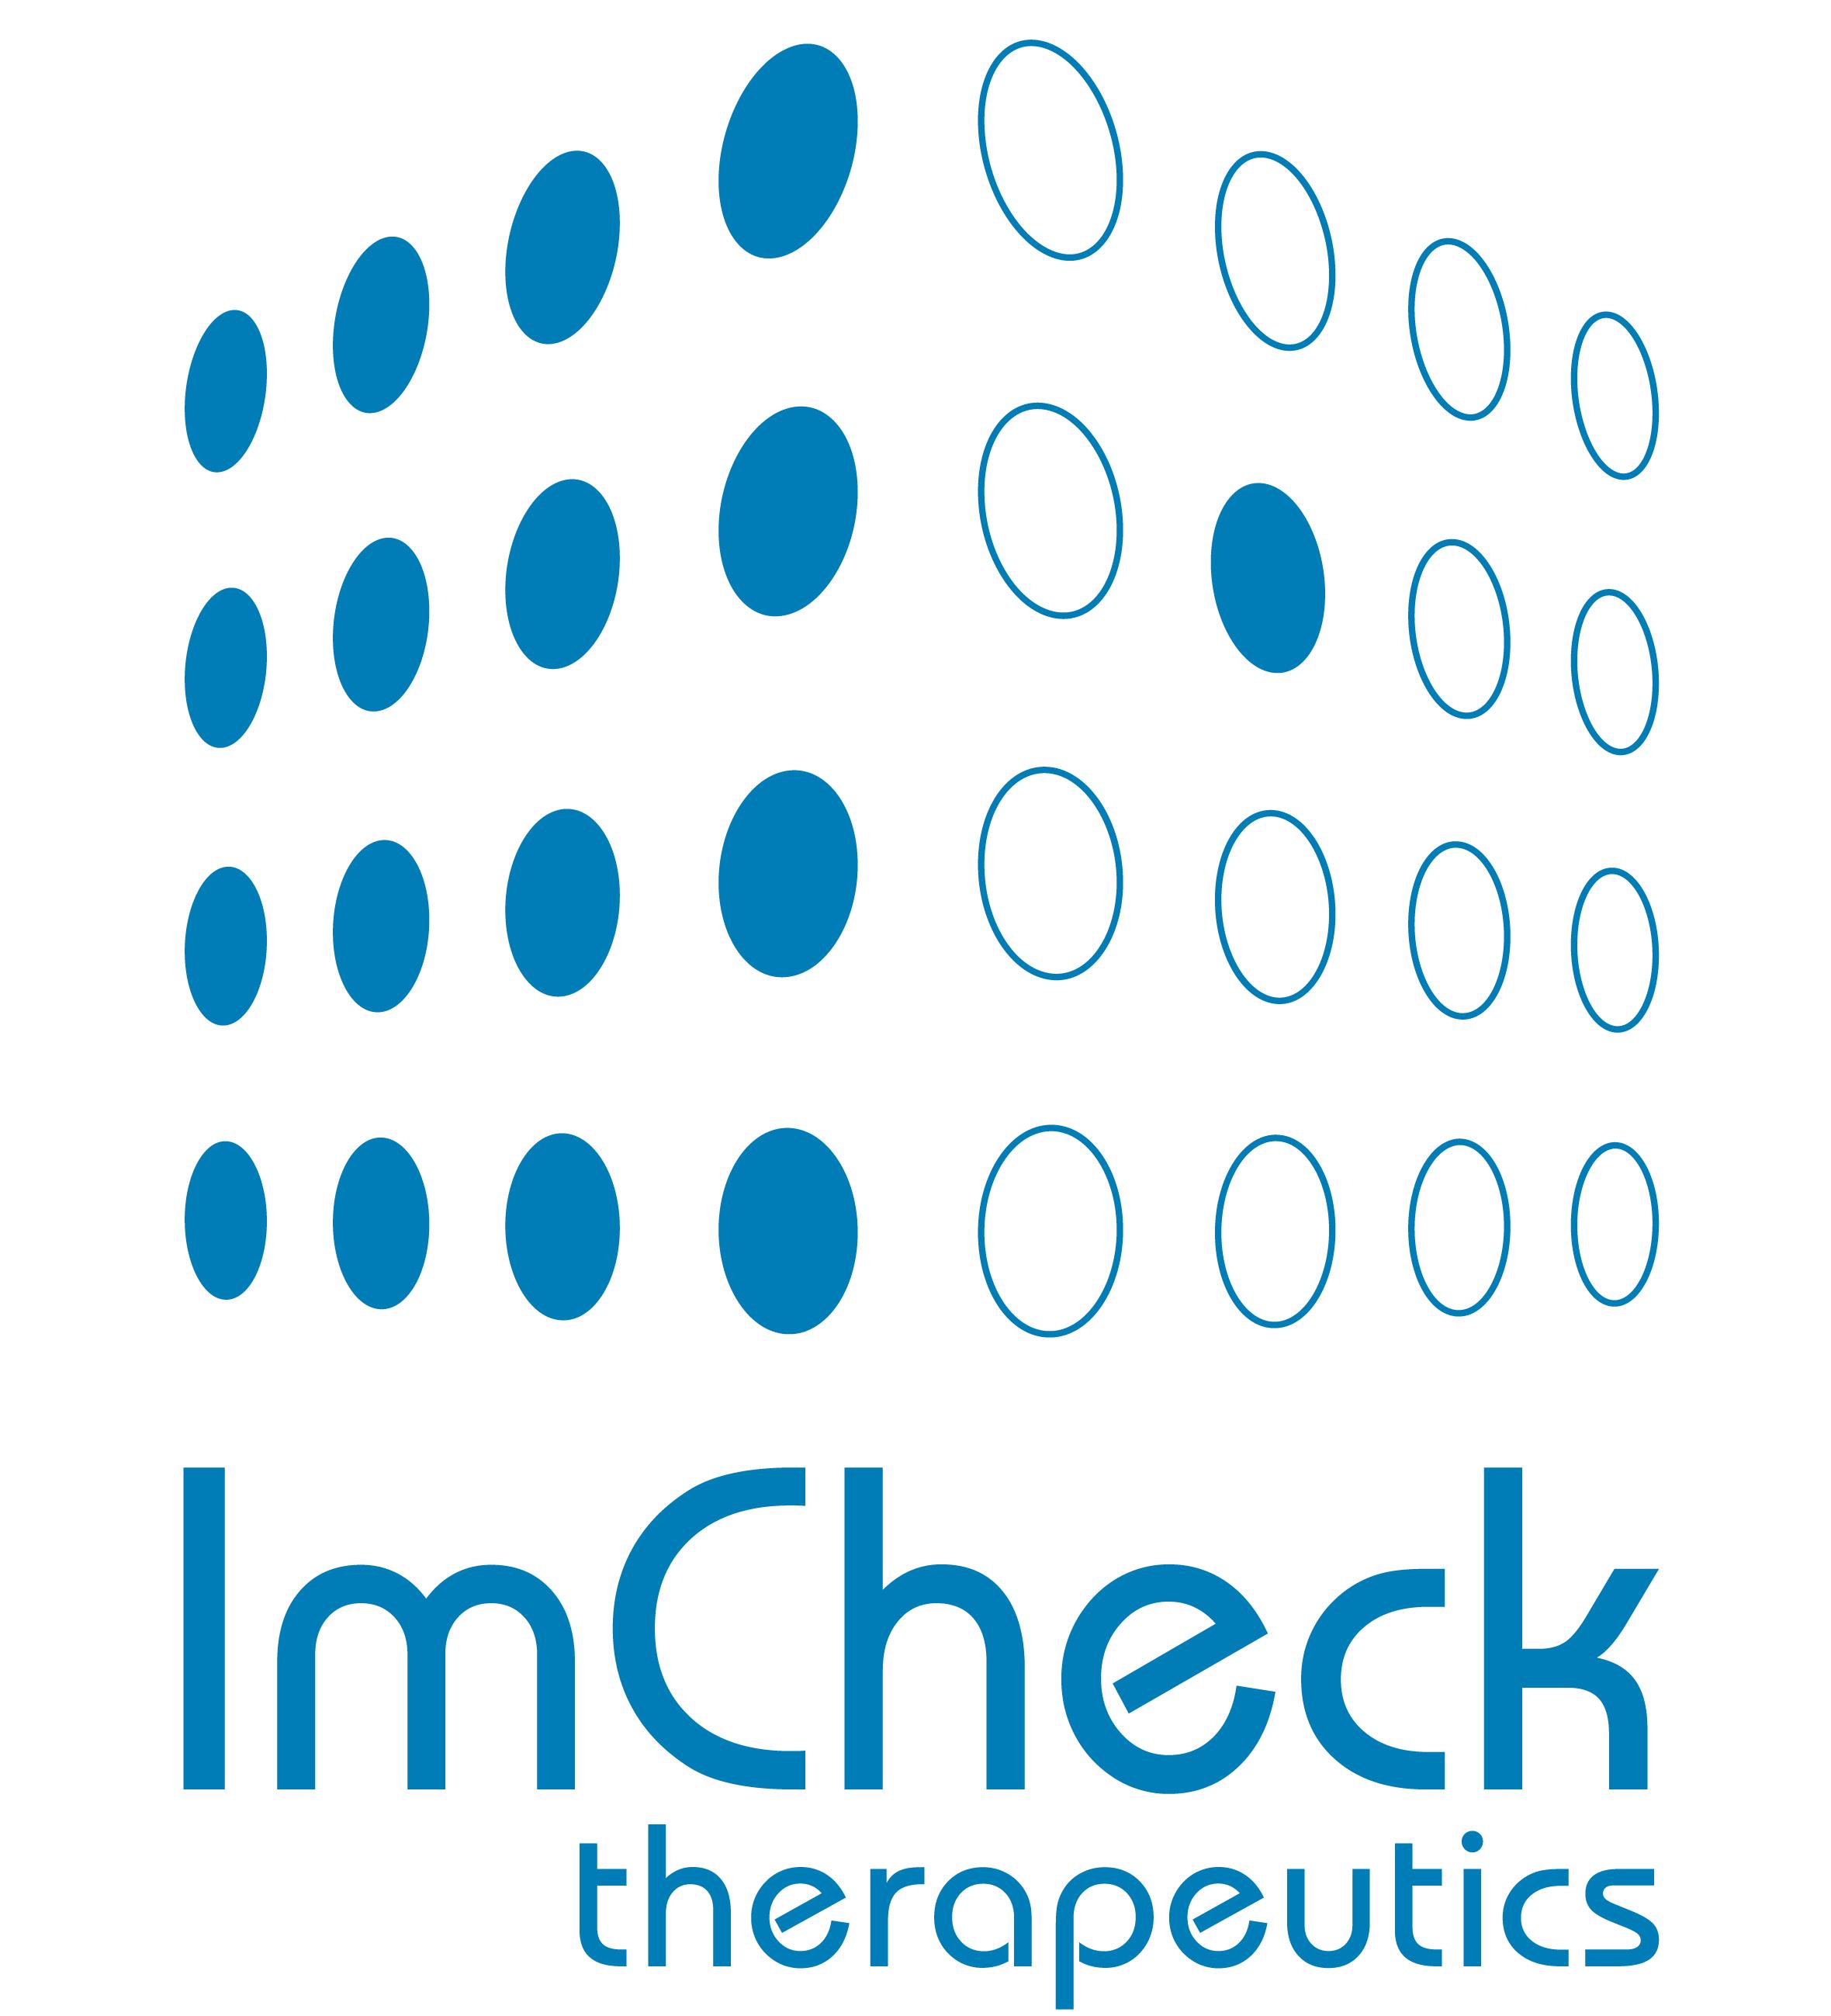 ImCheck Therapeutics